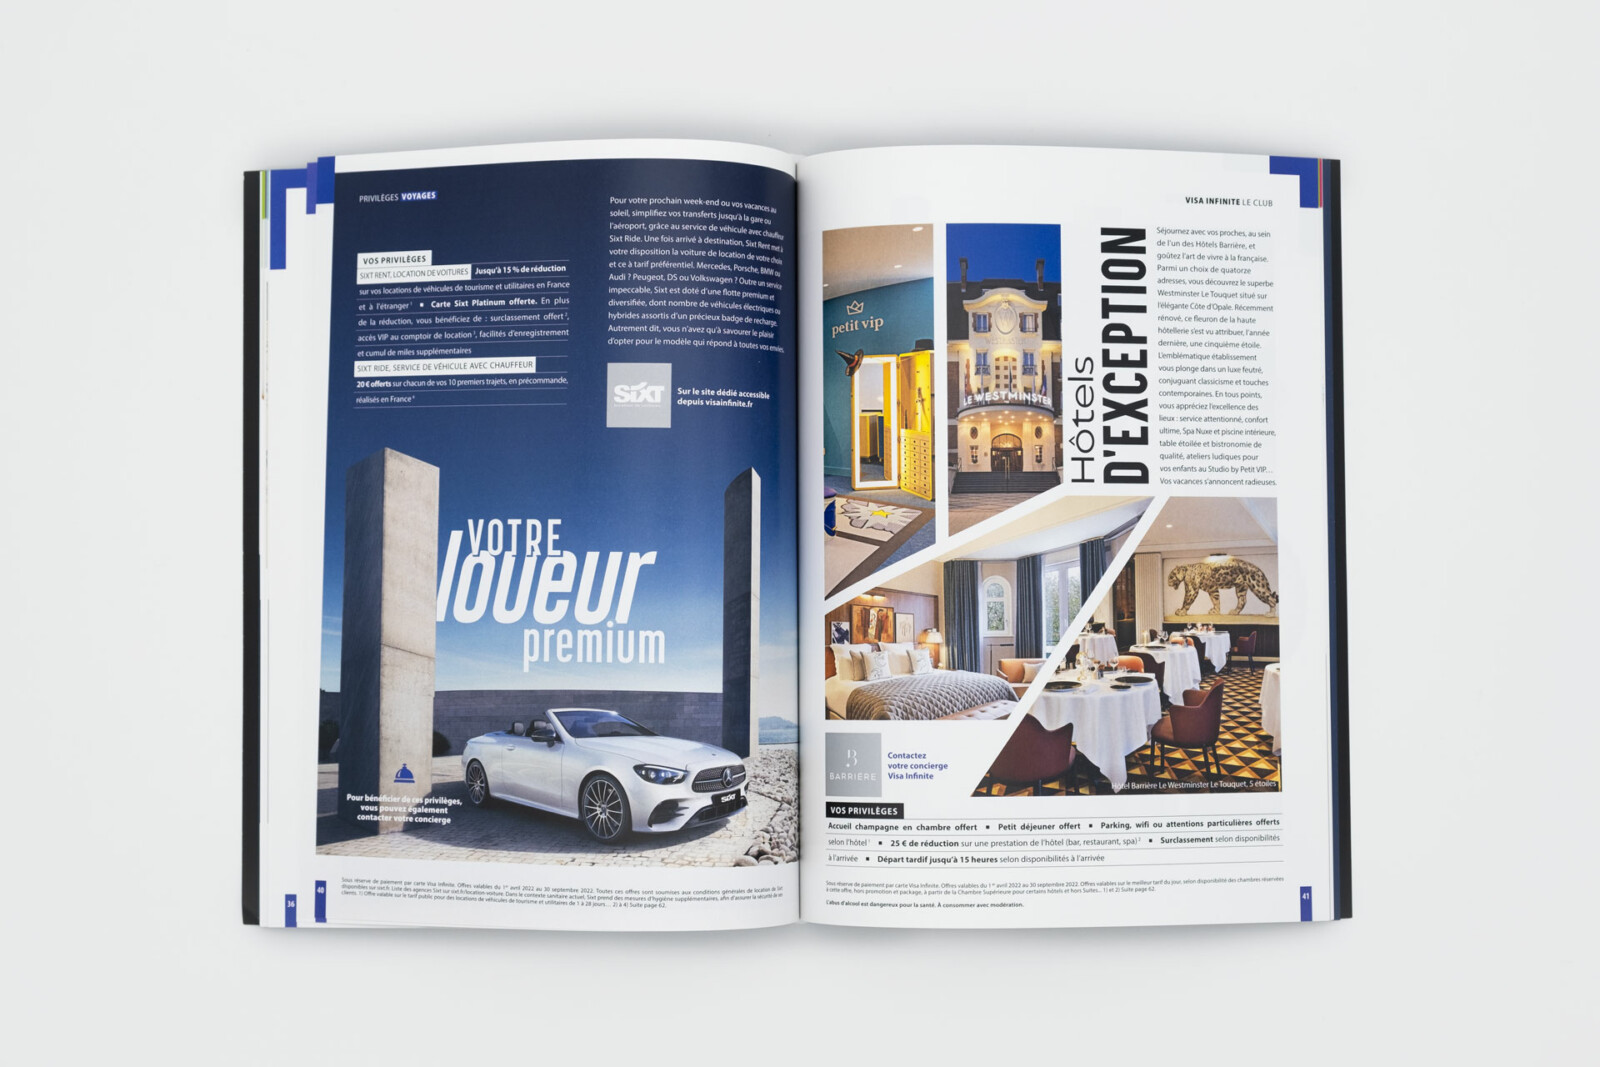 Double page de la rubrique voyage, en page de gauche un sujet consacré au loueur Avis, en page de droite un sujet consacré aux hotels Barrière.